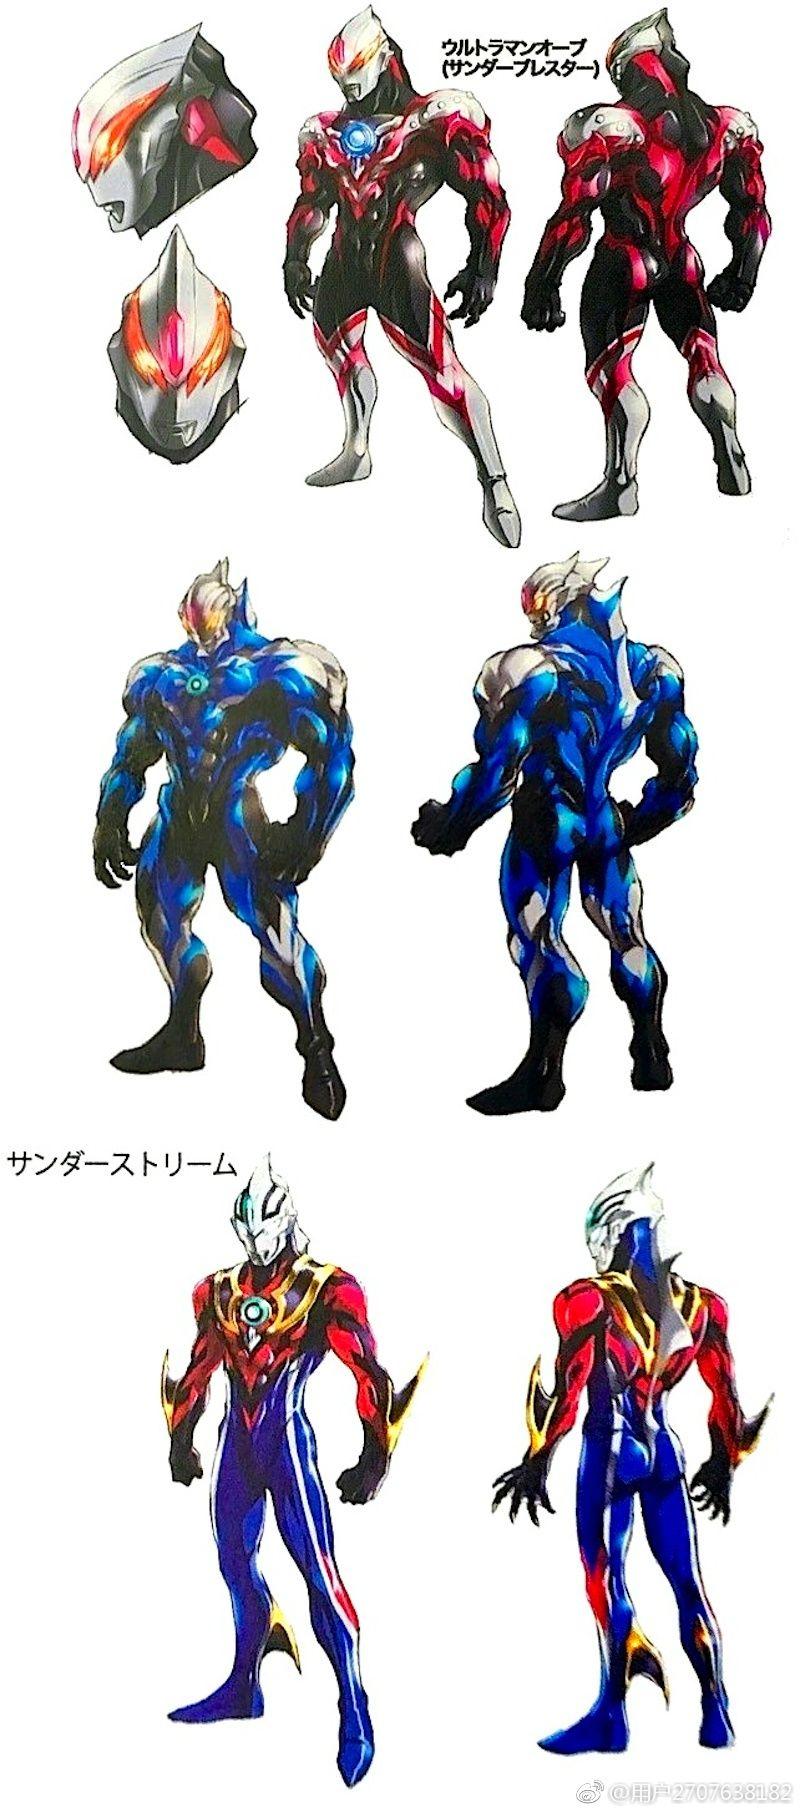 用户2707638182的照片 - 微相册 Ultraman Orb Art. Lovely Anime